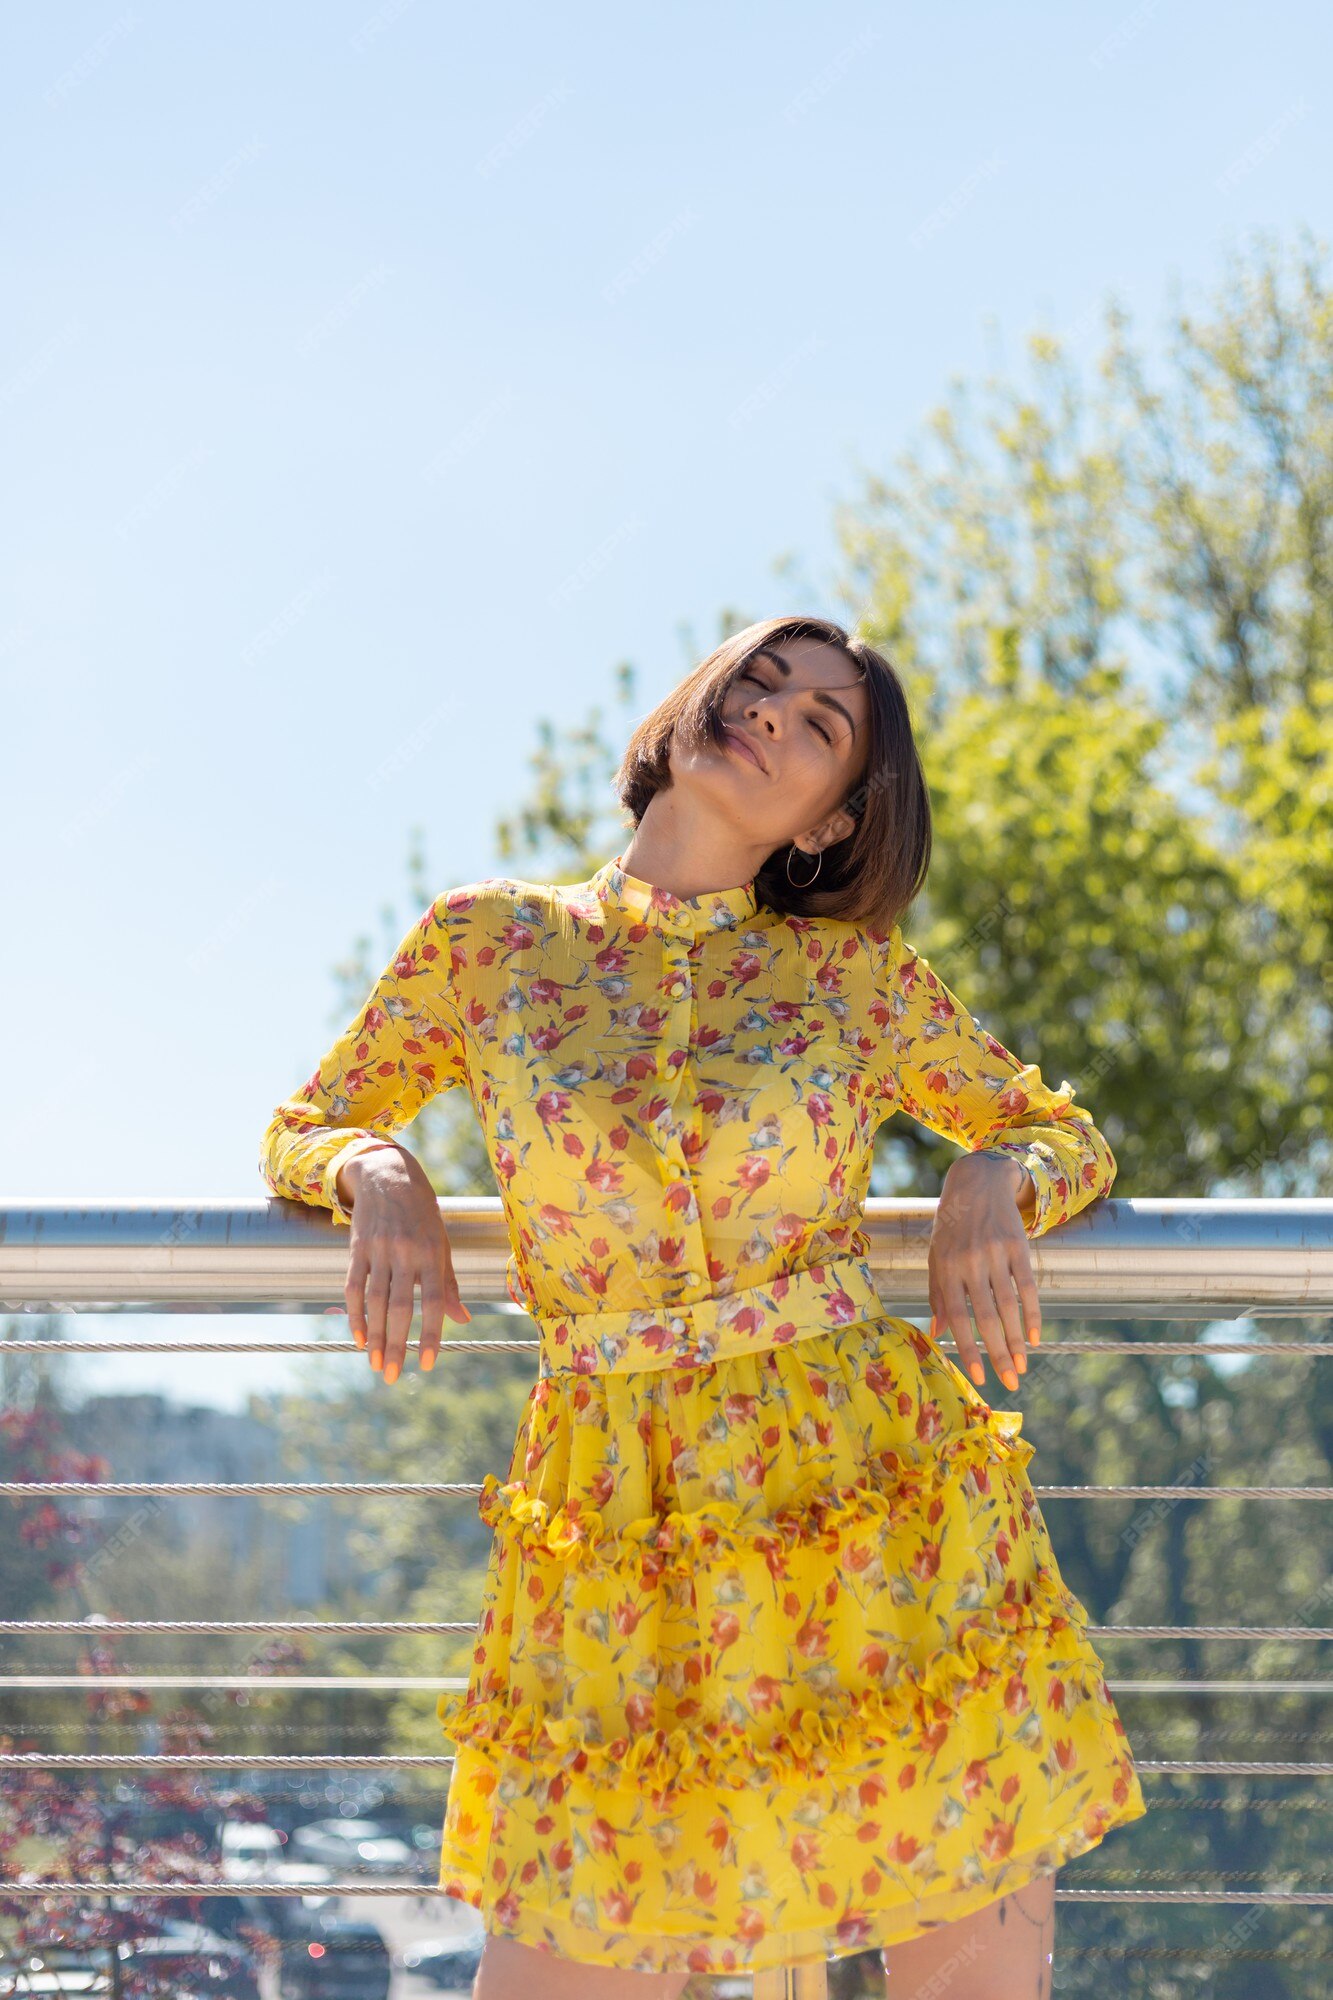 al aire libre de mujer en vestido amarillo de verano posando en el puente, feliz estado ánimo alegre, disfrutando de los días soleados de verano | Foto Gratis